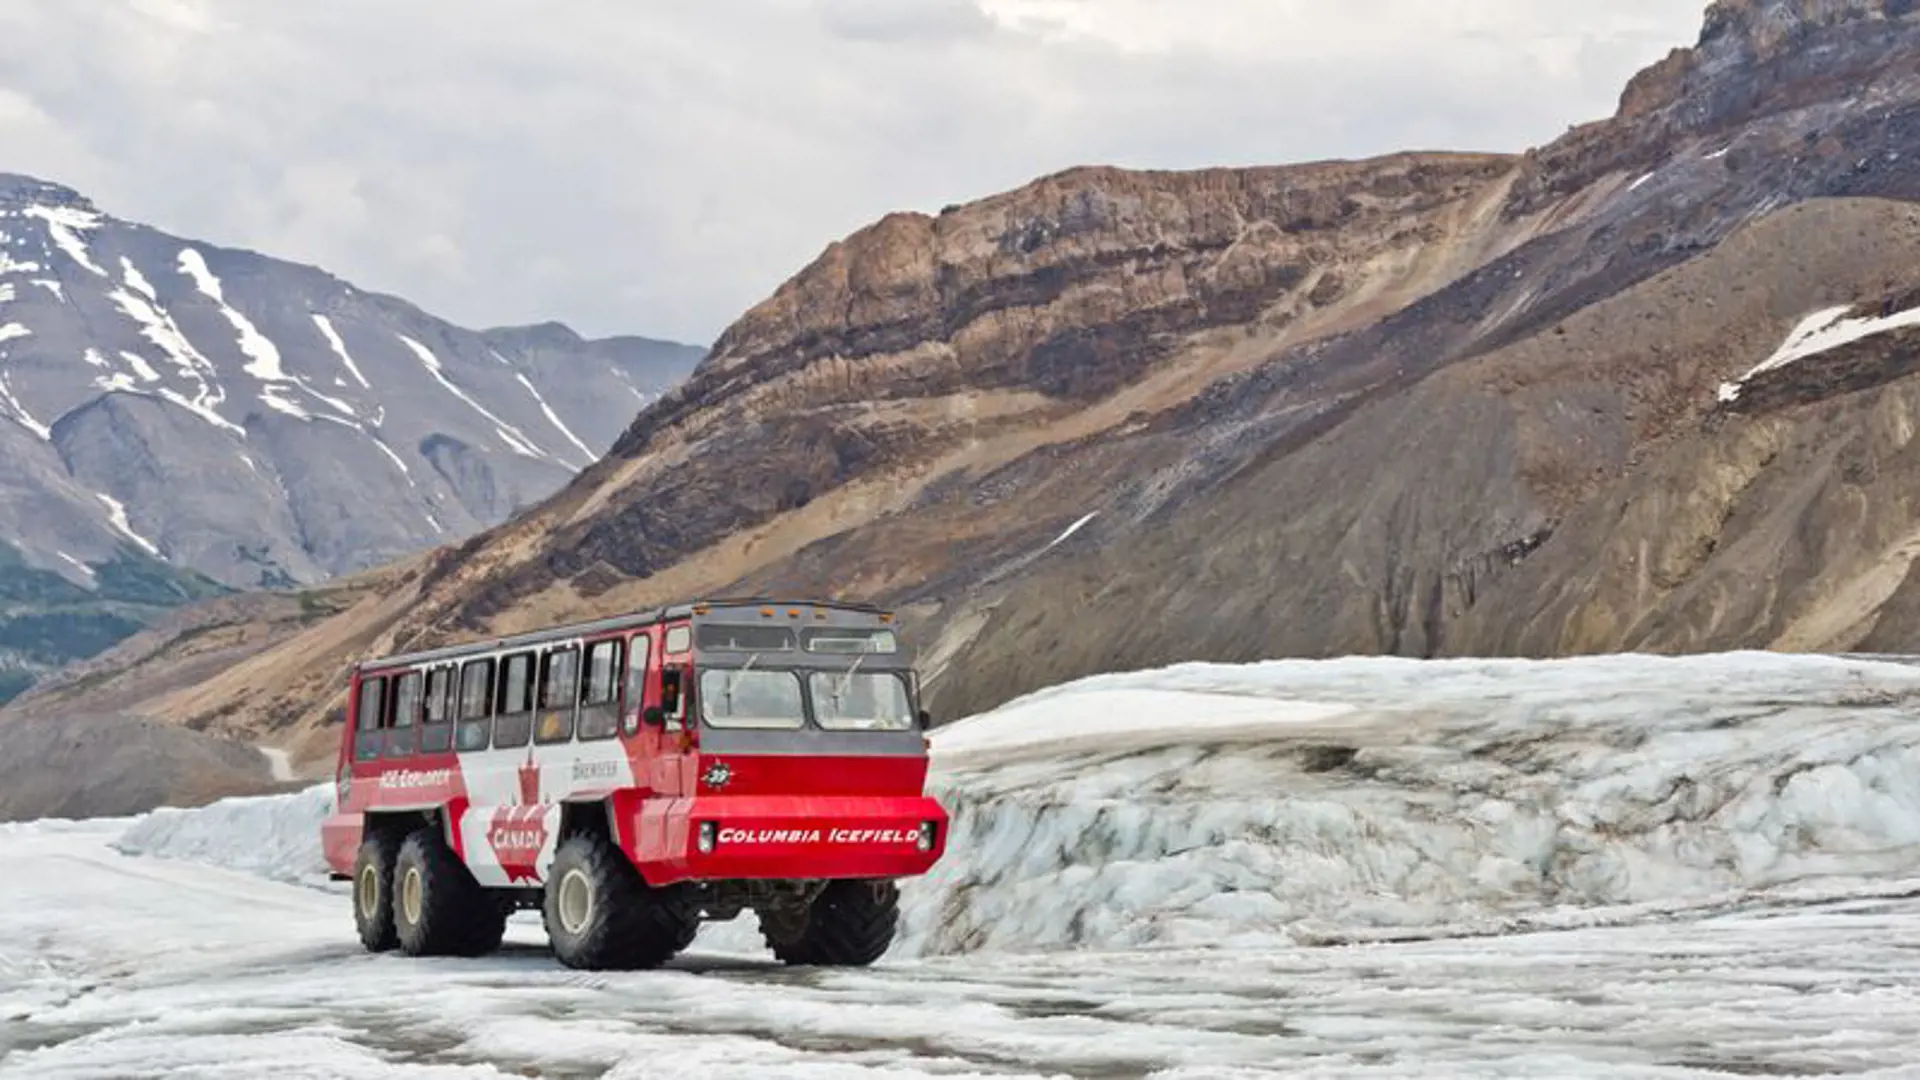 COLOMBIA ICEFIELD -  tag turen op til gletsjeren i et af de science fiction agtige køretøjer, Check Point Travel